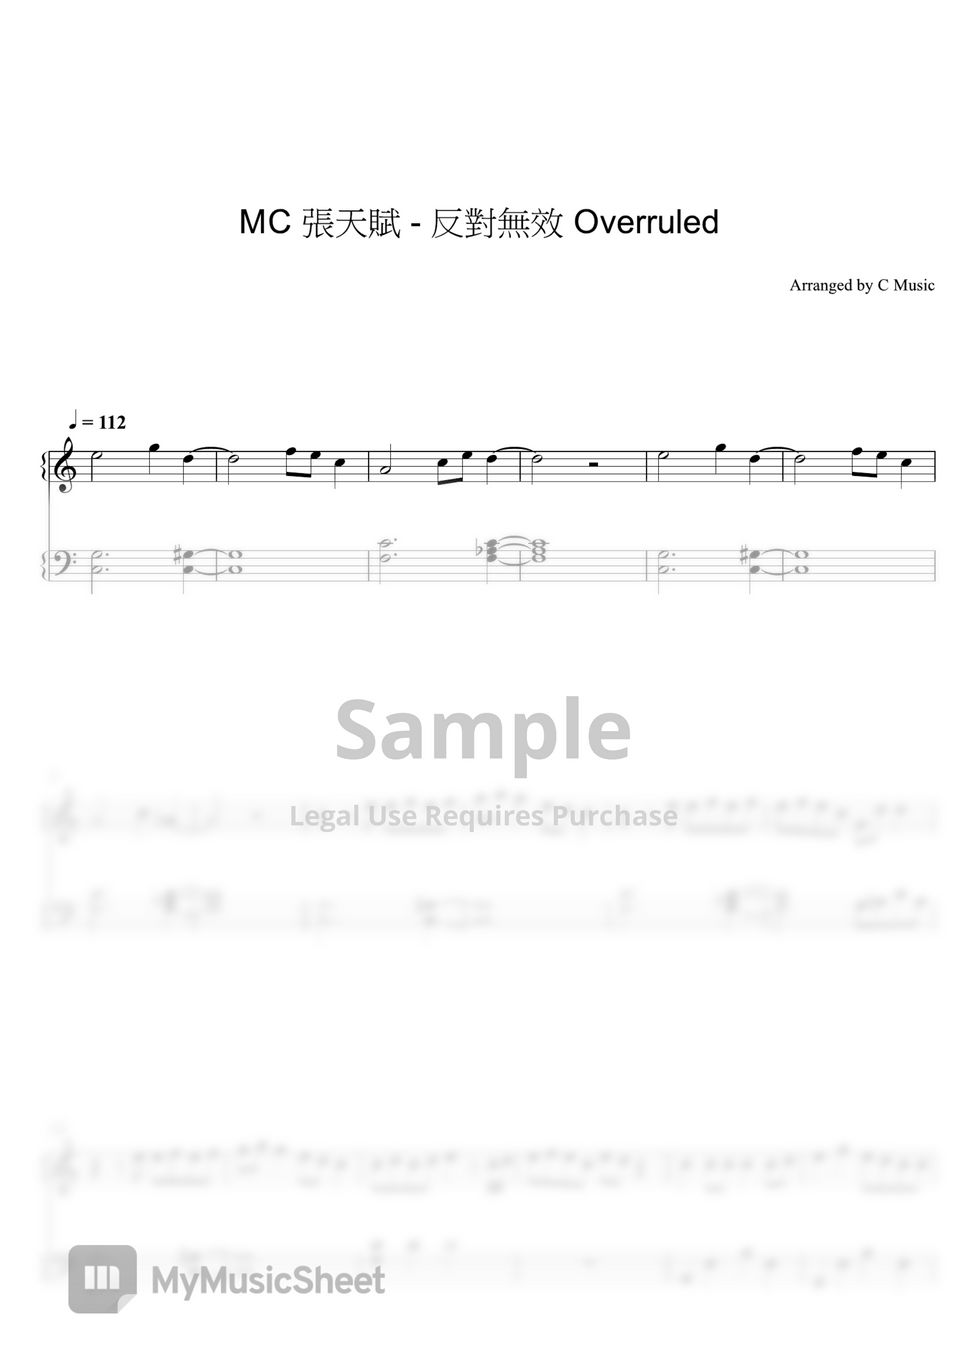 MC 張天賦 - 反對無效 Overruled by C Music